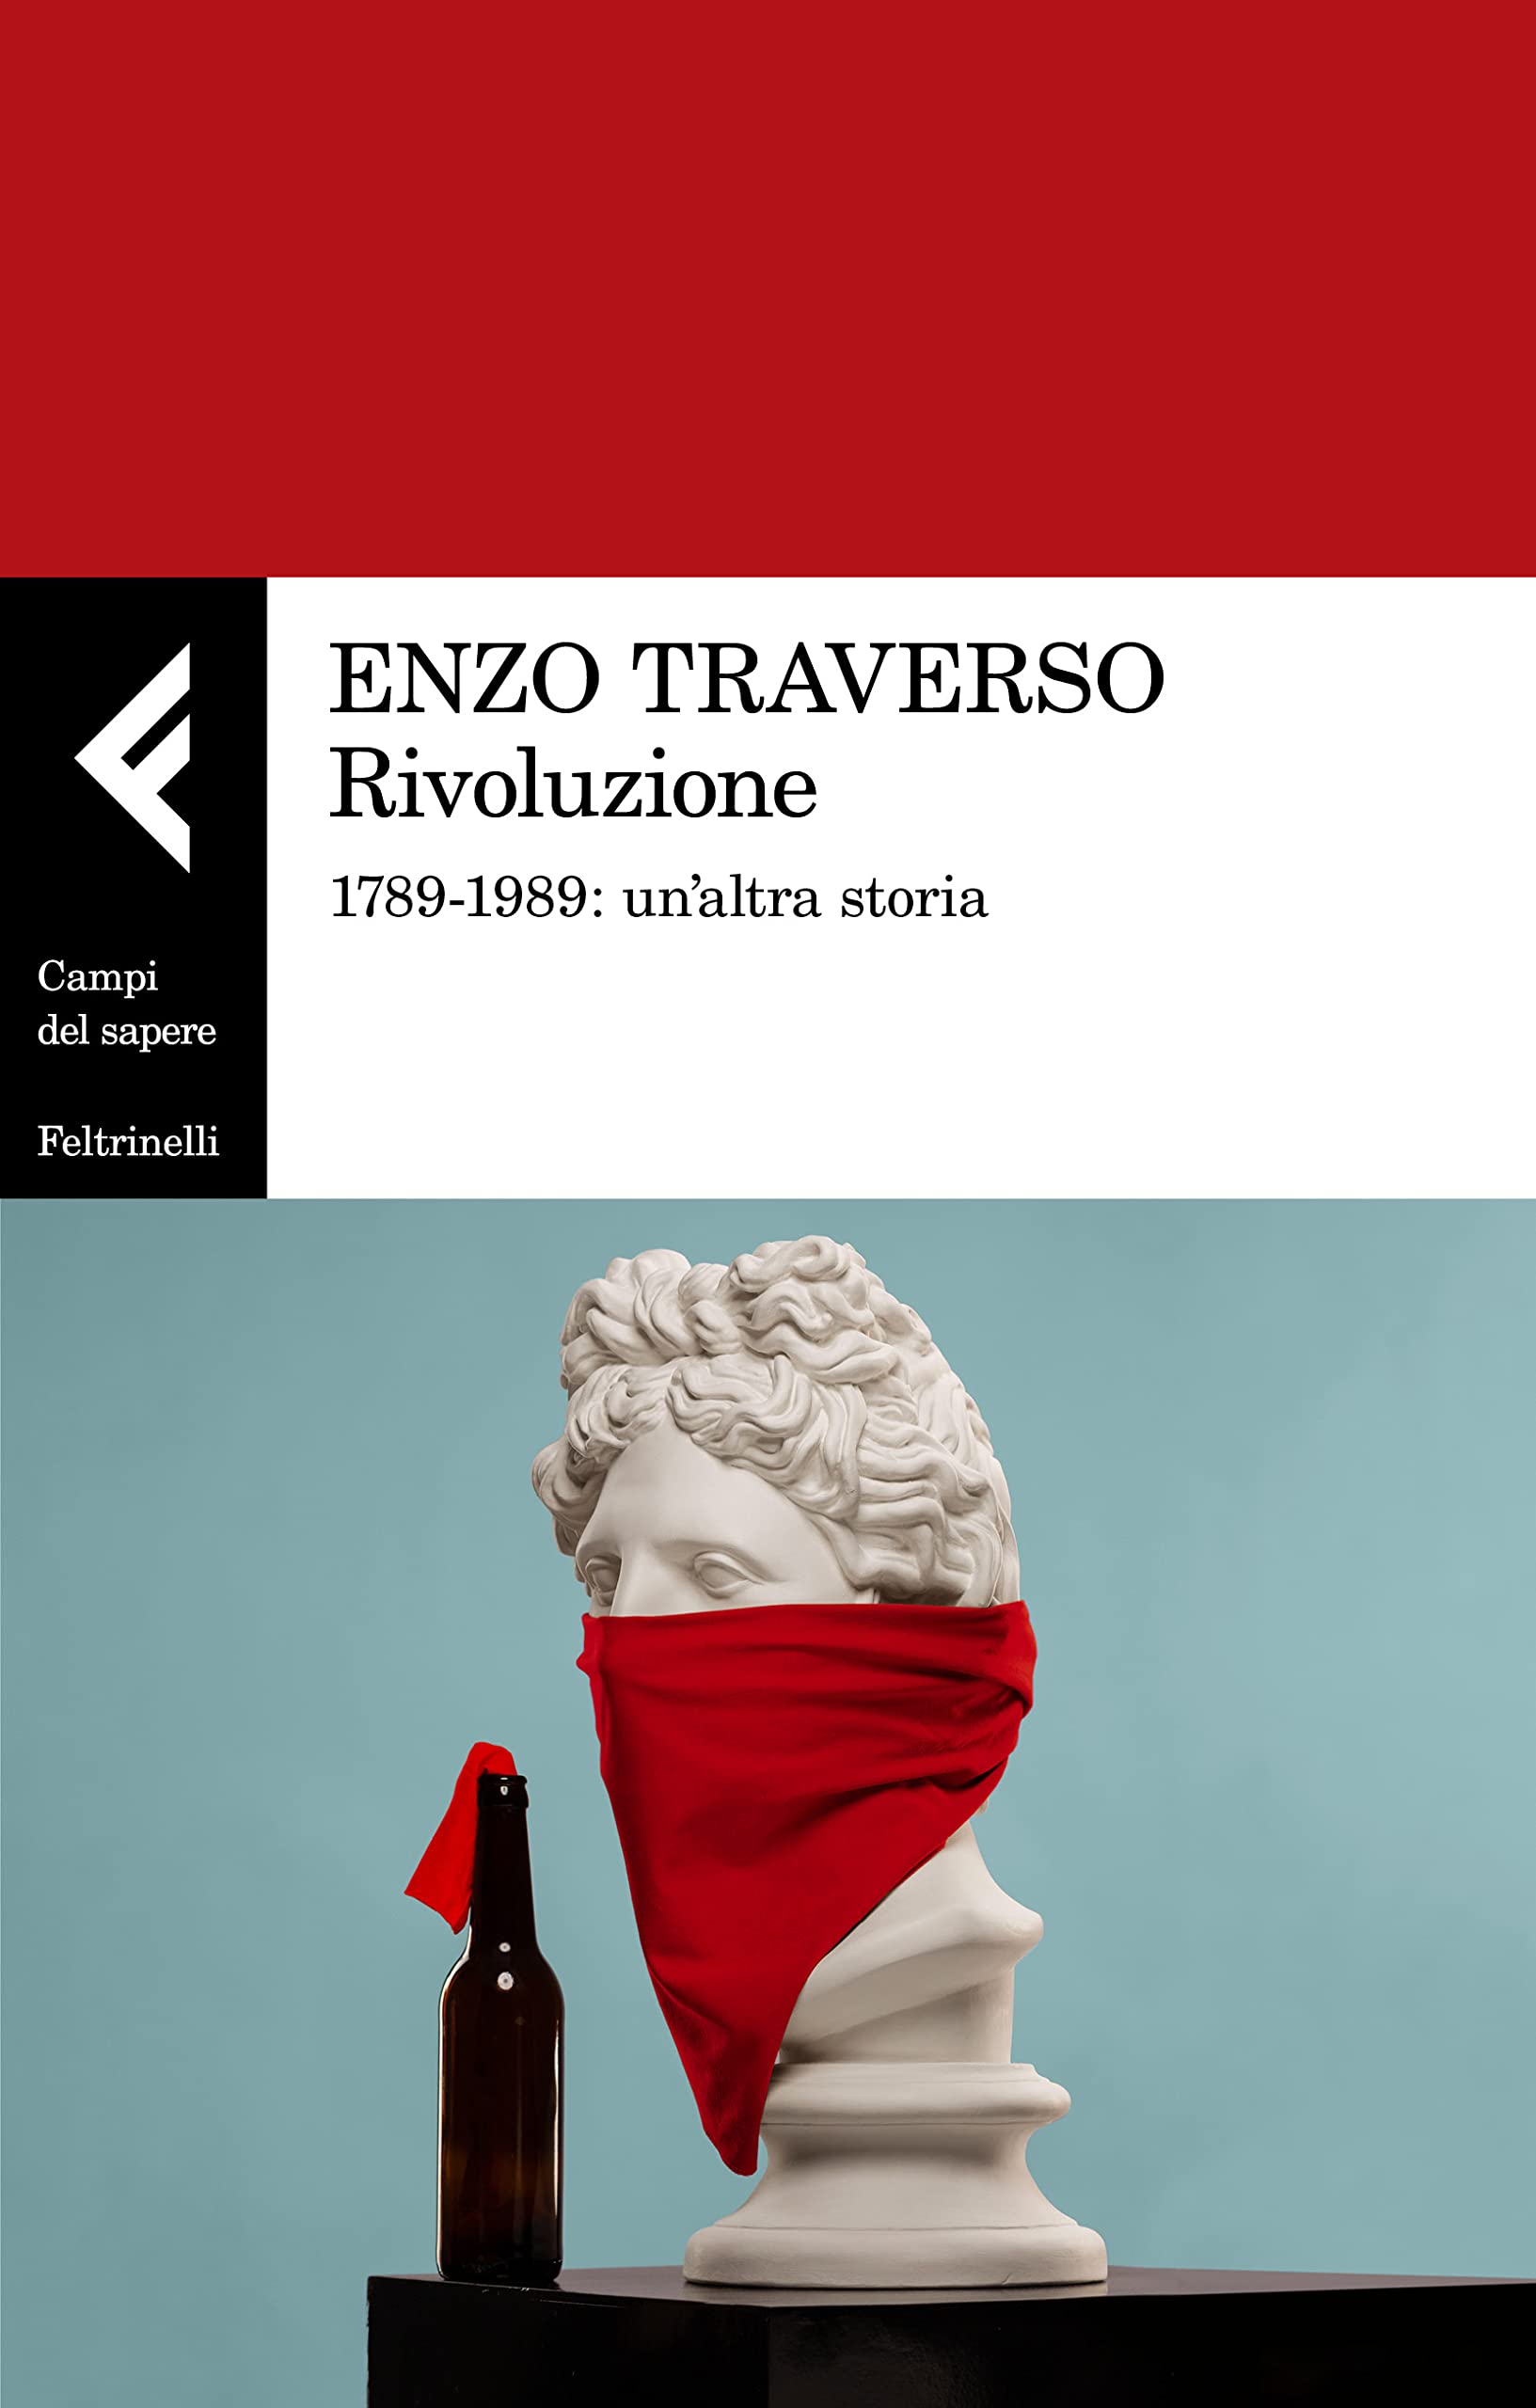 Enzo Traverso, “Rivoluzione”